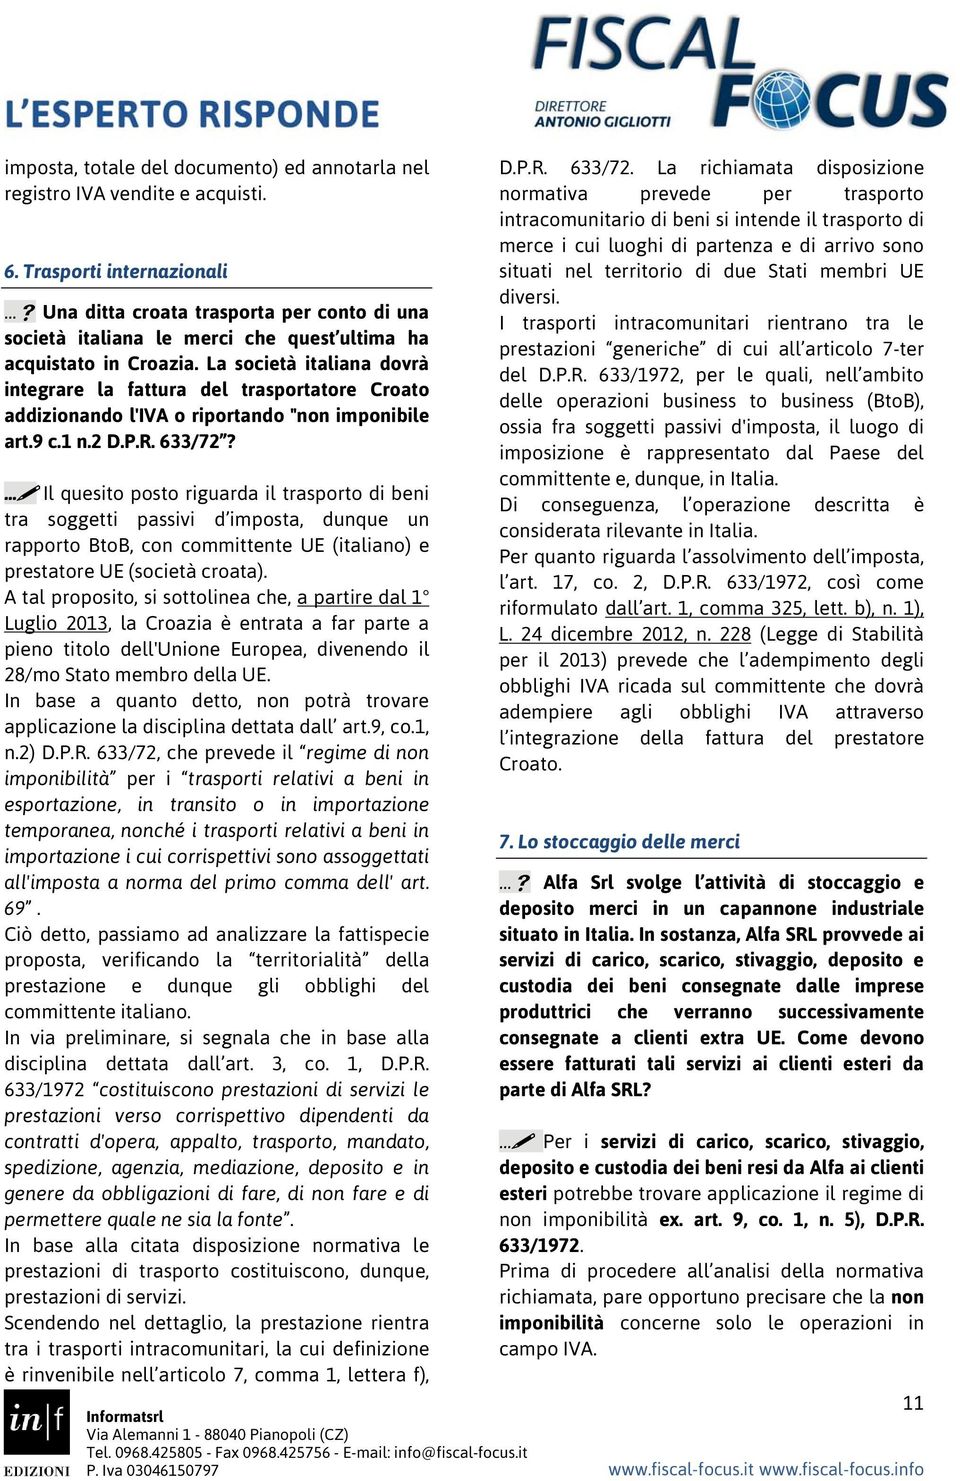 La società italiana dovrà integrare la fattura del trasportatore Croato addizionando l'iva o riportando "non imponibile art.9 c.1 n.2 D.P.R. 633/72?